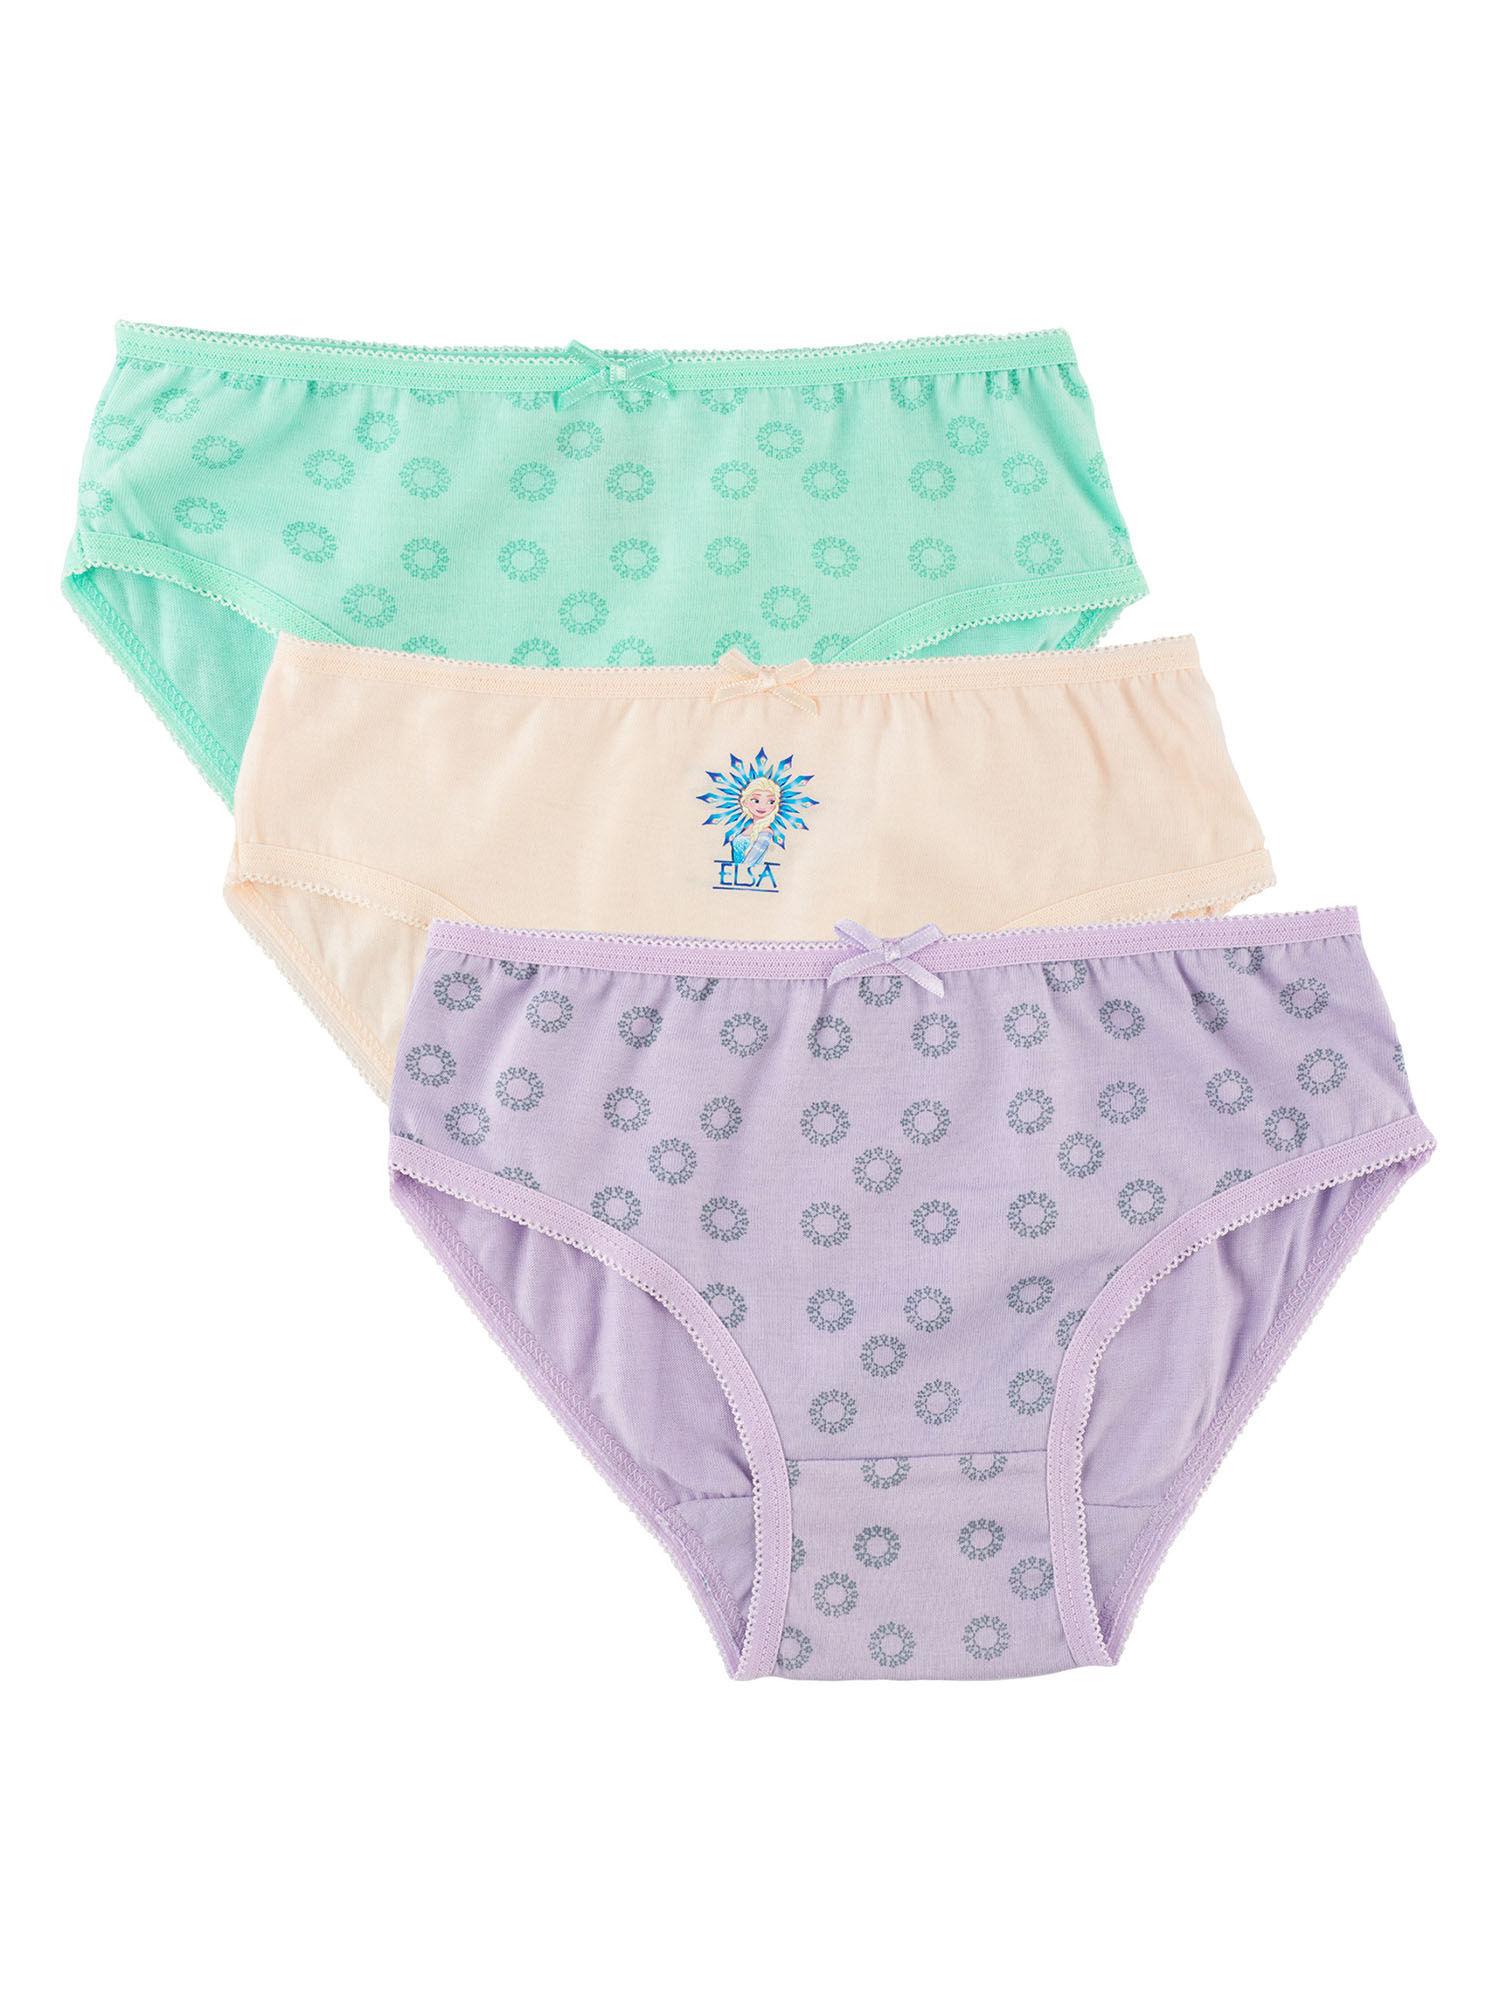 girls-frozen-printed-brief-underwear-innerwear-multicolor-(pack-of-3)